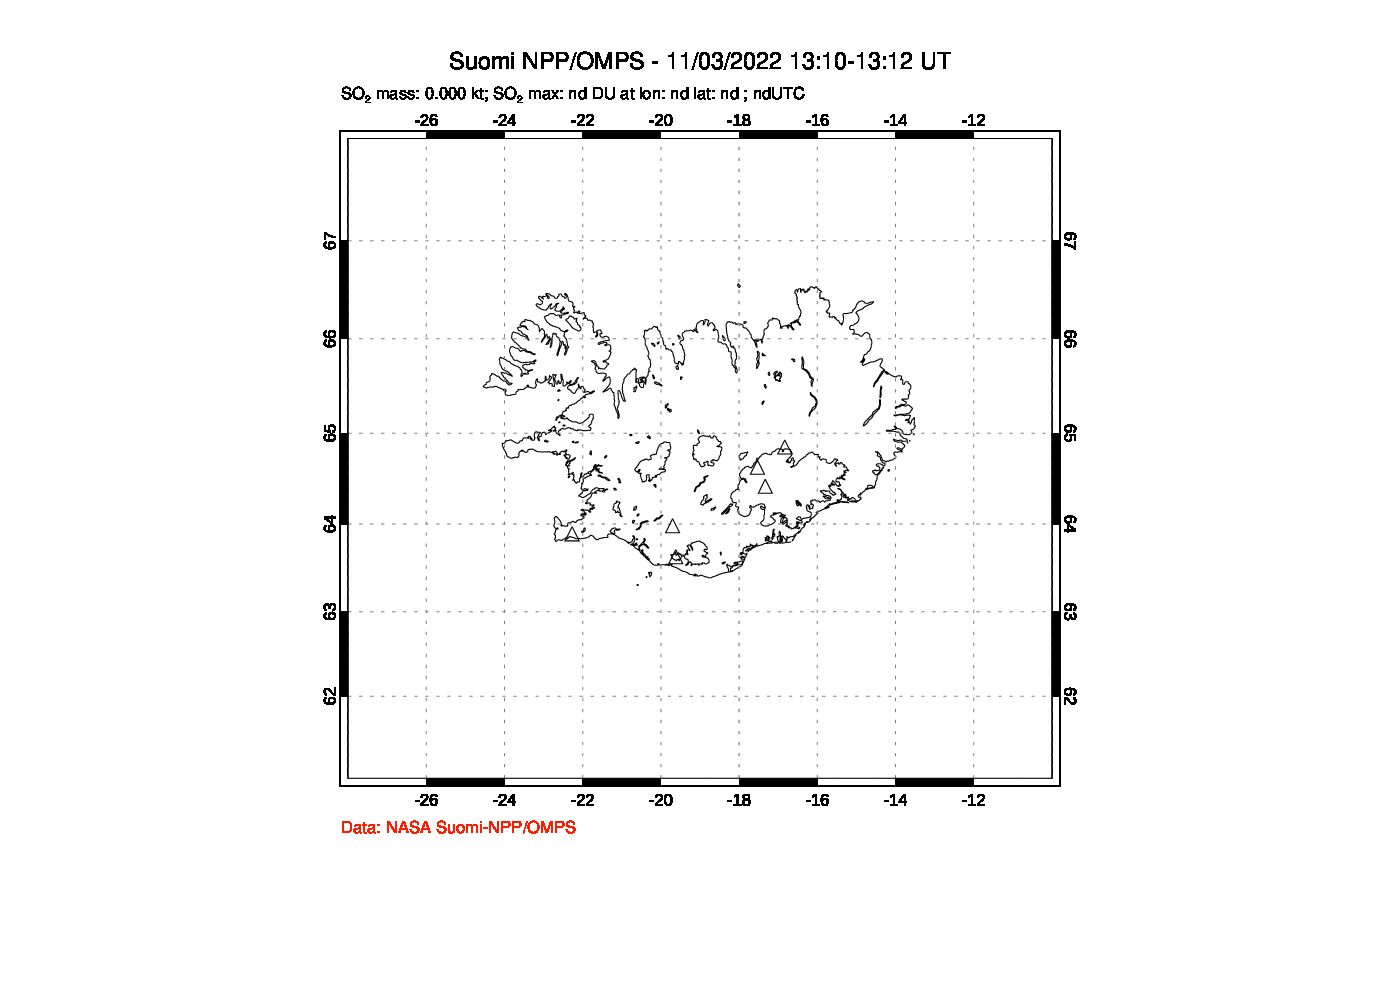 A sulfur dioxide image over Iceland on Nov 03, 2022.